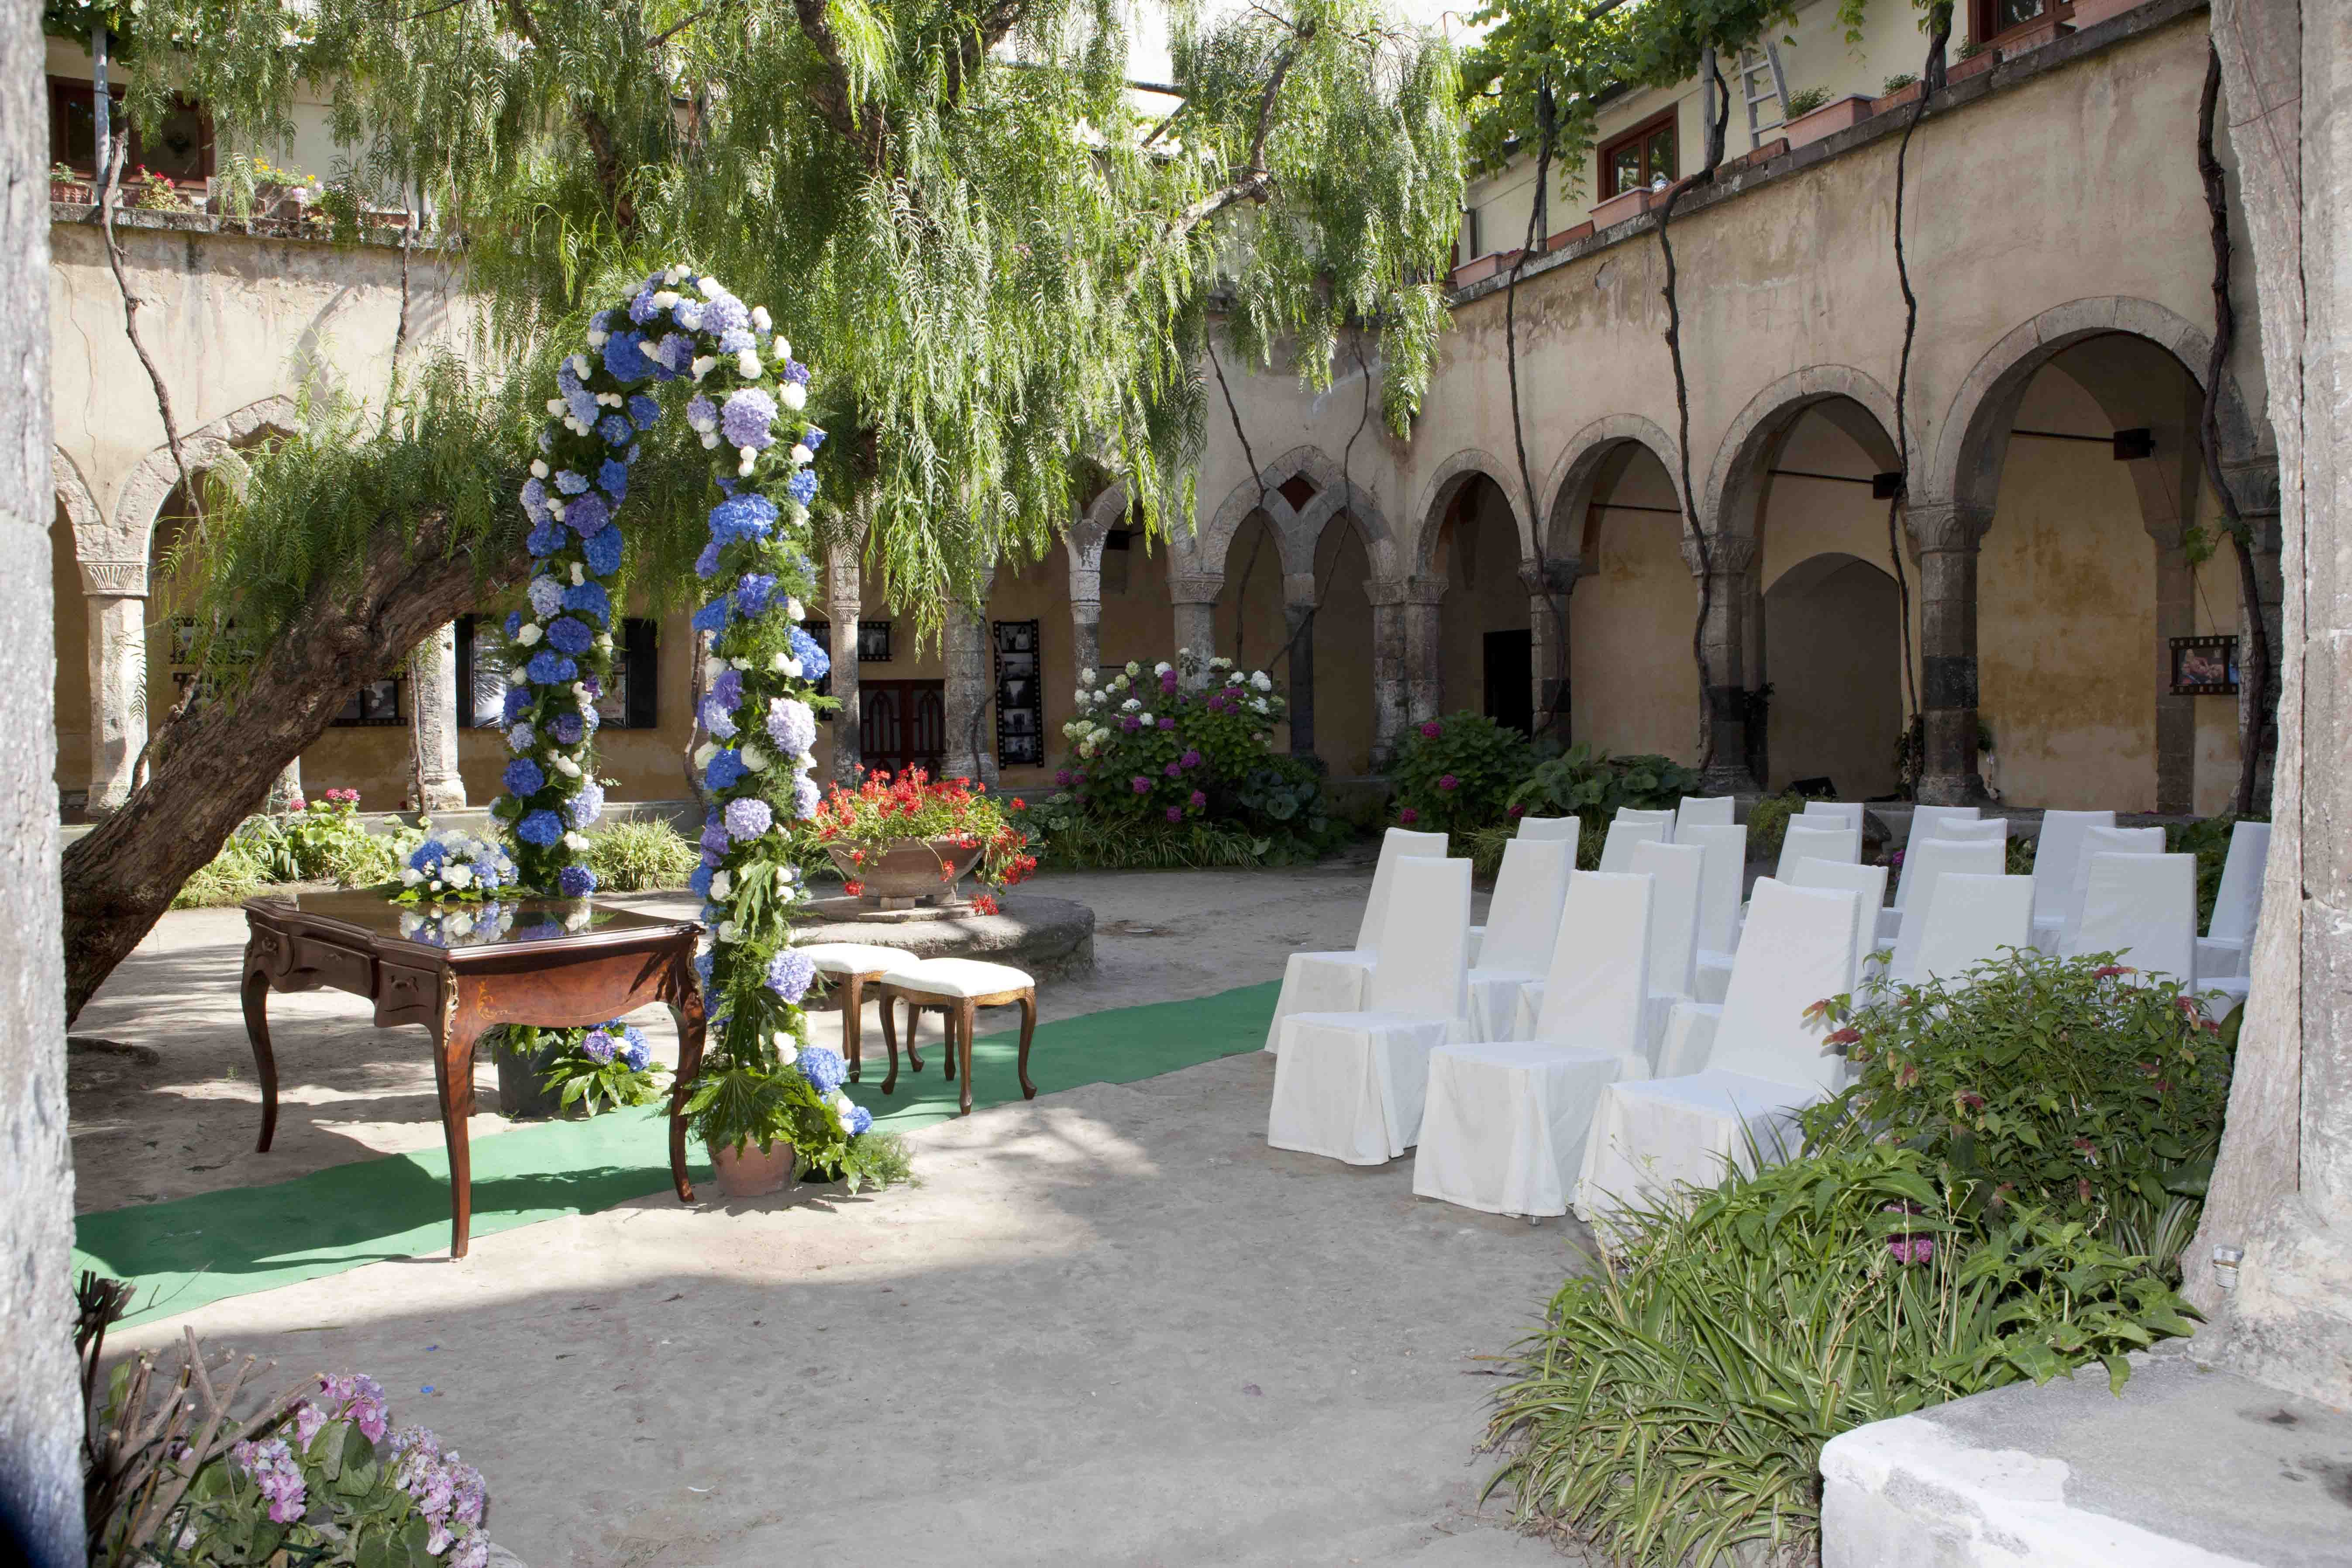 Civil ceremony in the cloister of San Francesco in Sorrento- Italy ...